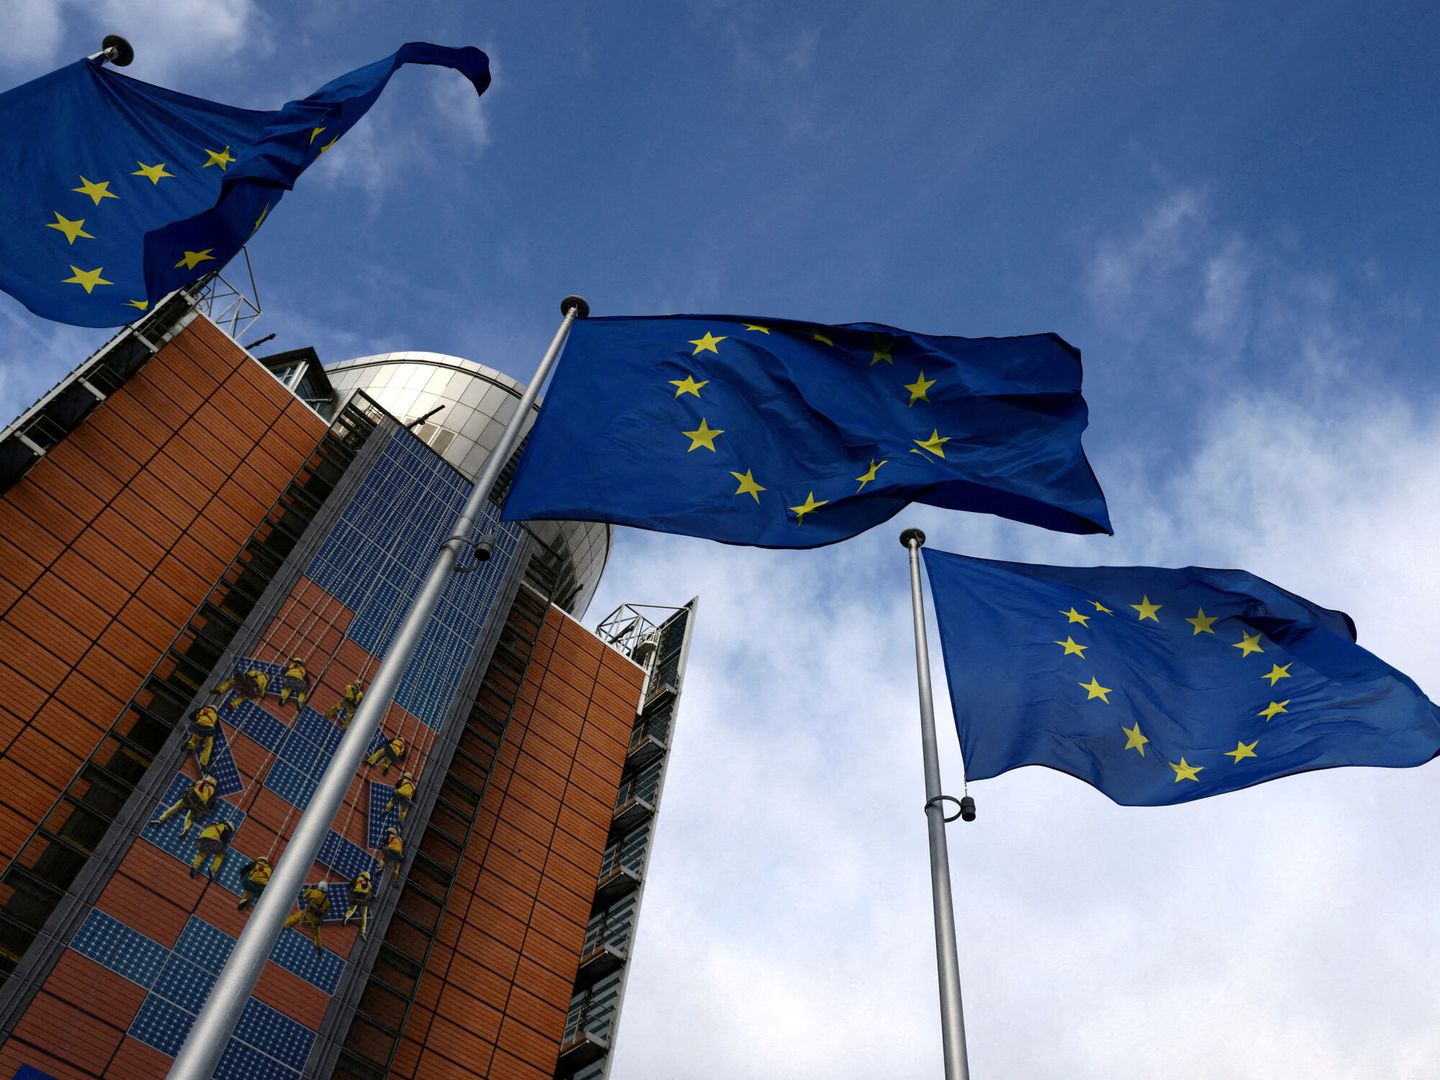 Banderas de la Unión Europea. (Reuters)